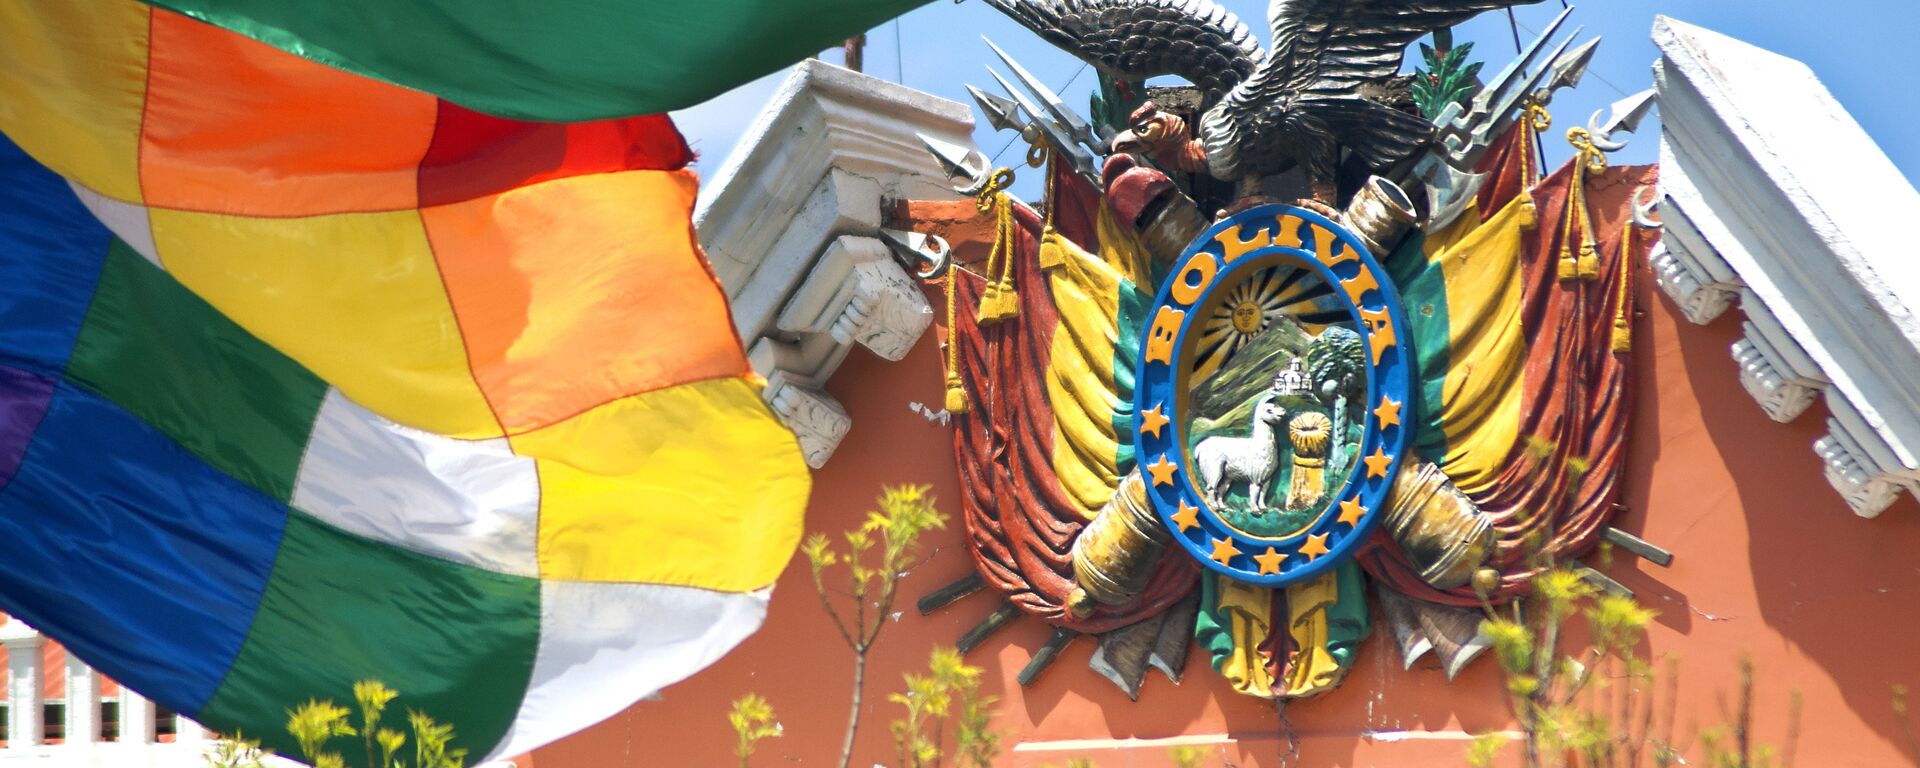 Escudo de Bolivia en el Palacio de Gobierno - Sputnik Mundo, 1920, 24.08.2021